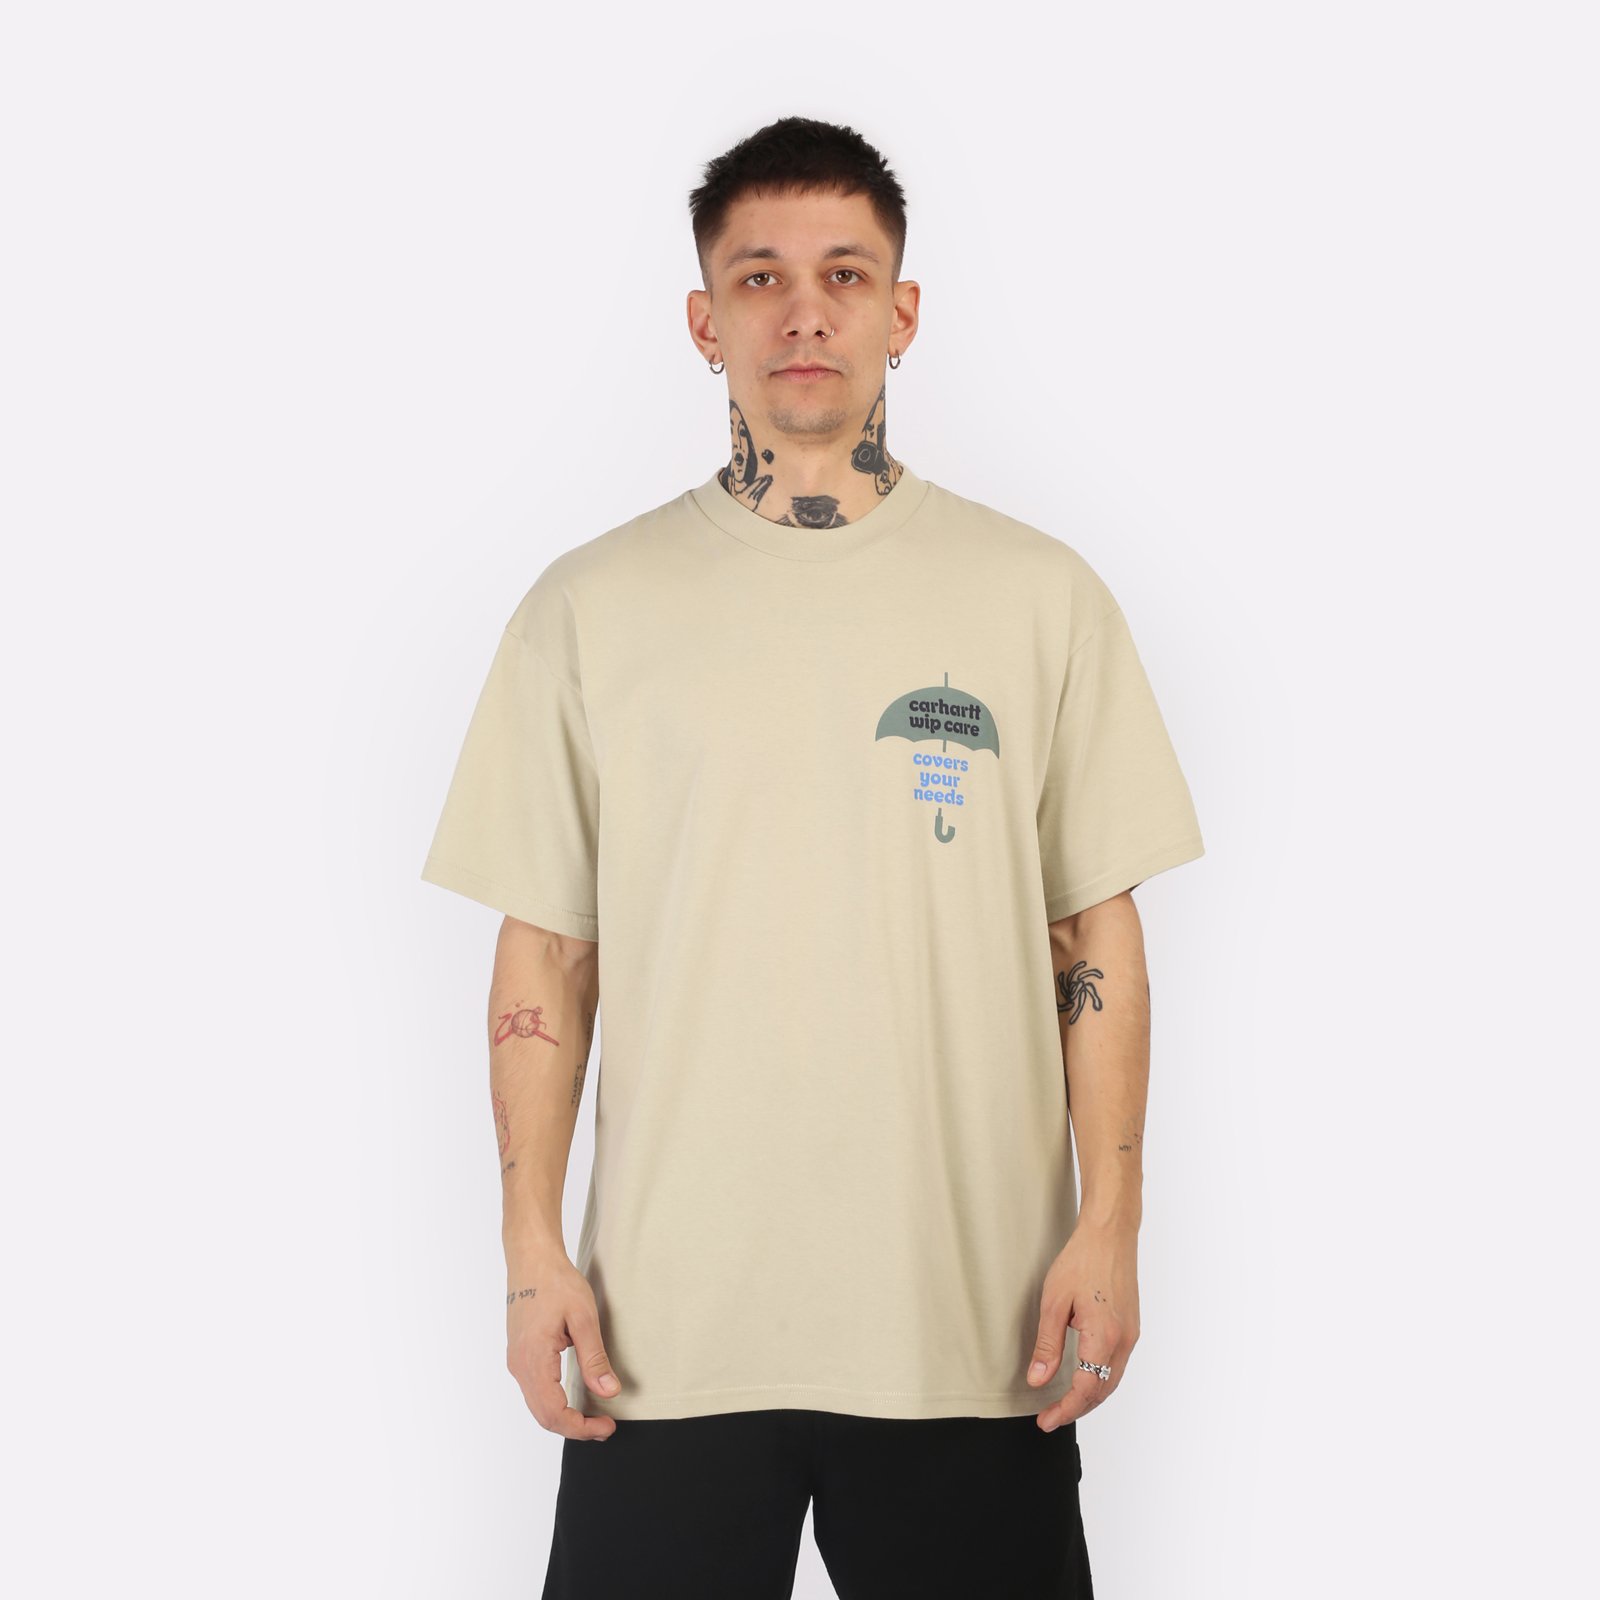 мужская бежевая футболка Carhartt WIP S/S Covers T-Shirt I033165-beryl - цена, описание, фото 1